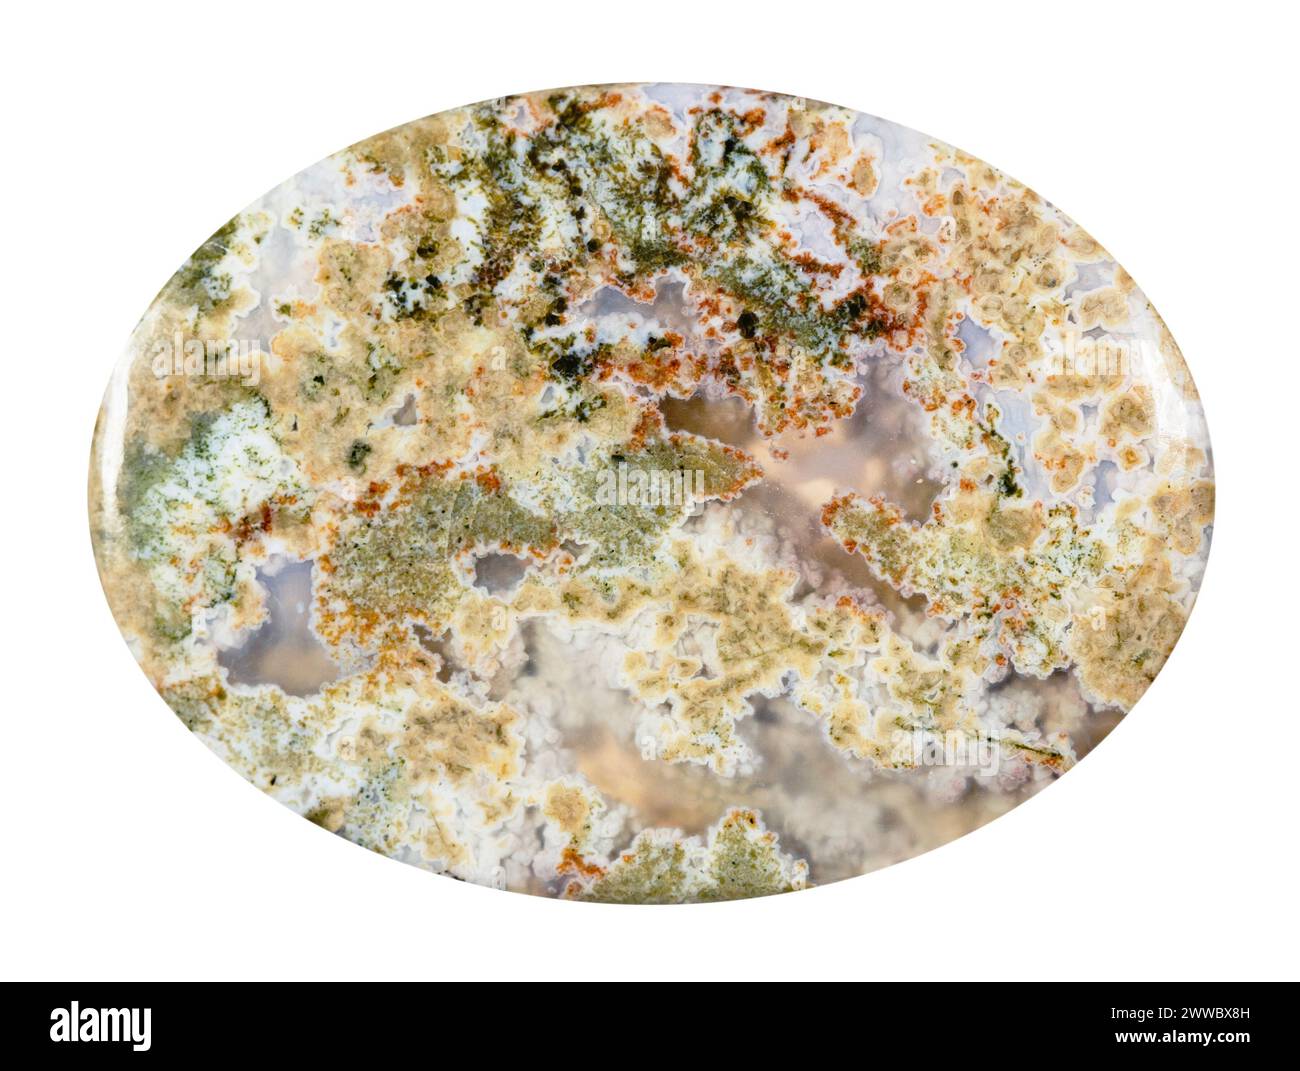 primo piano di un campione di pietra naturale proveniente dalla raccolta geologica - cabochon proveniente da un minerale di agata di muschio lucidato isolato su sfondo bianco Foto Stock